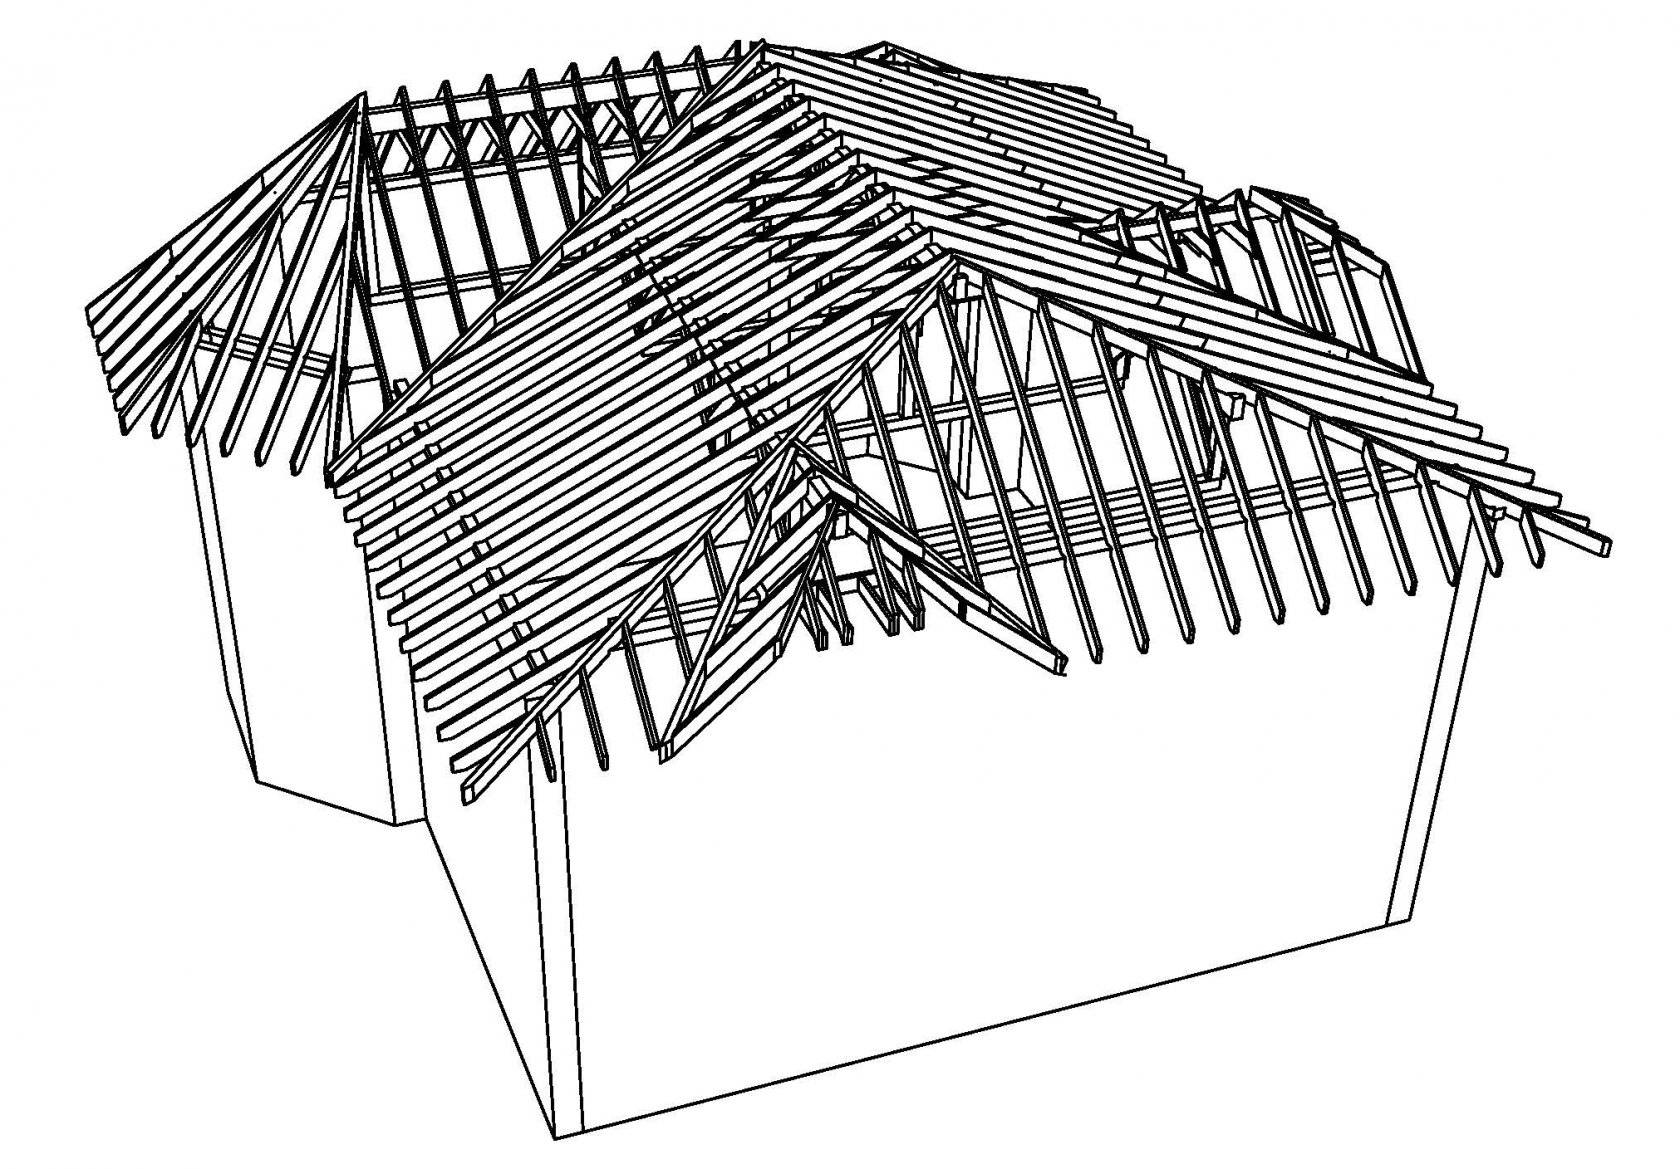 Ттк. устройство двускатной крыши при строительстве индивидуального жилого дома,